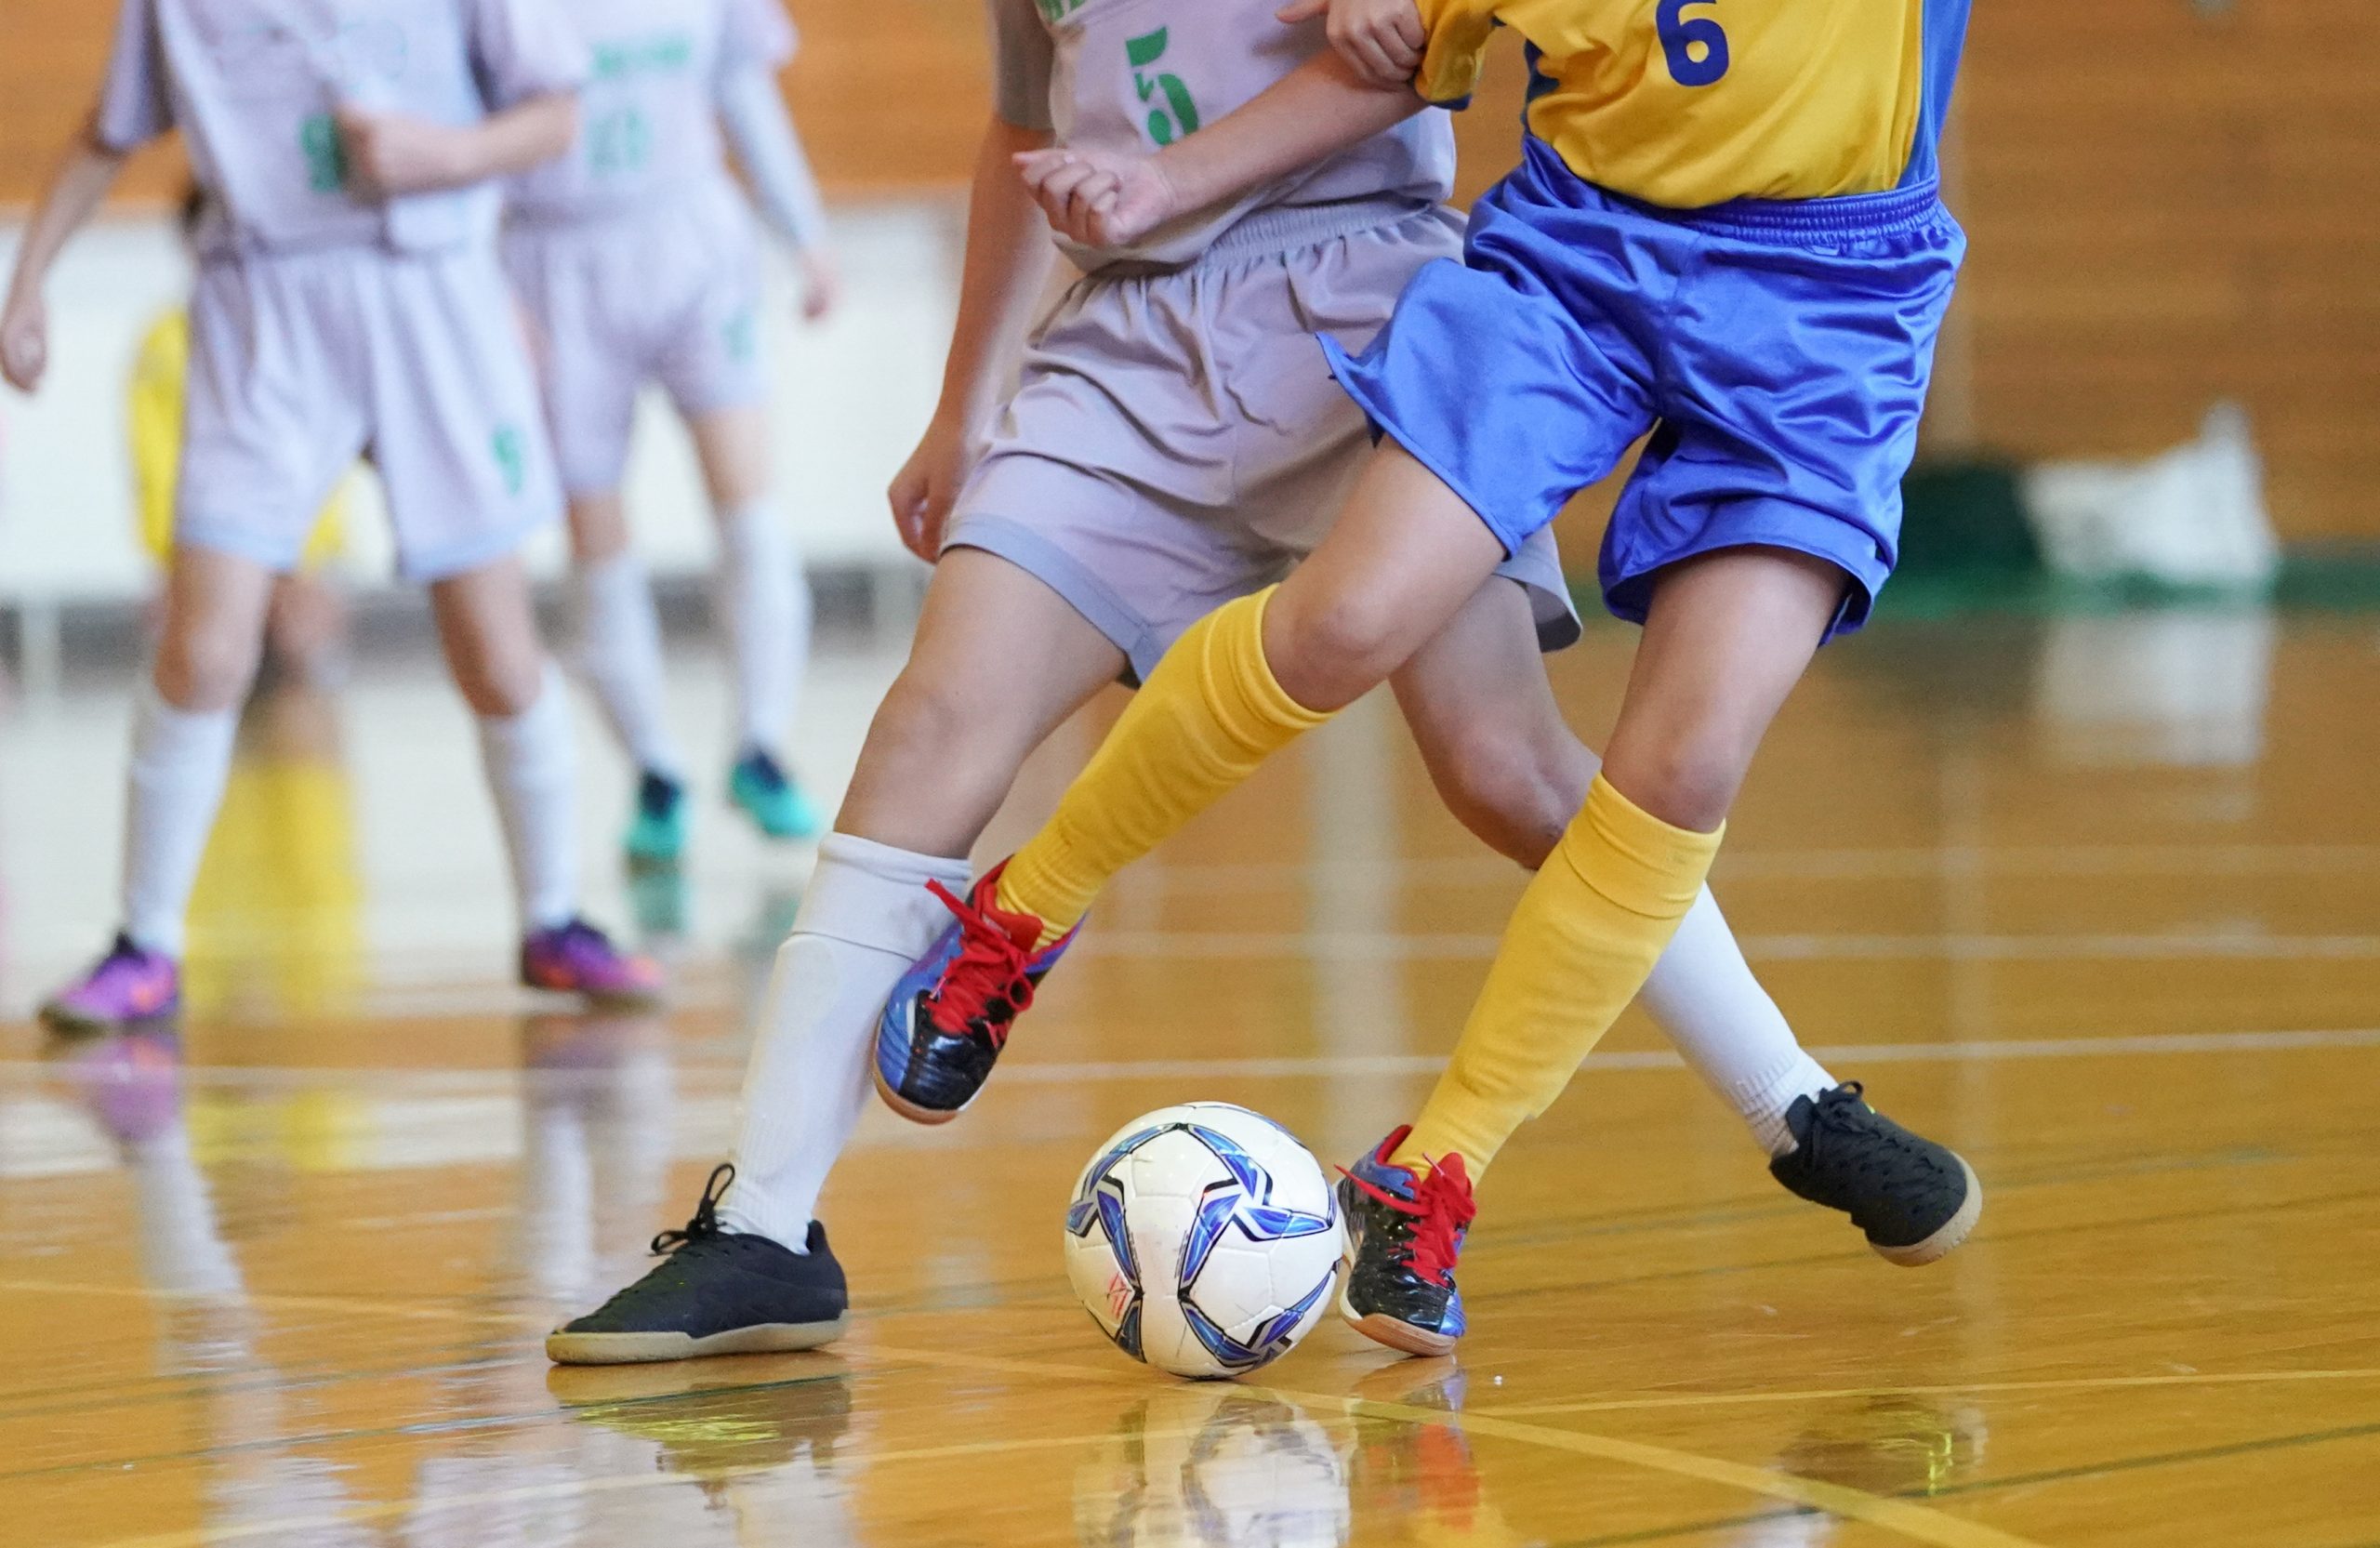 Escolinha de Futsal as inicia matriculas para crianças de 05